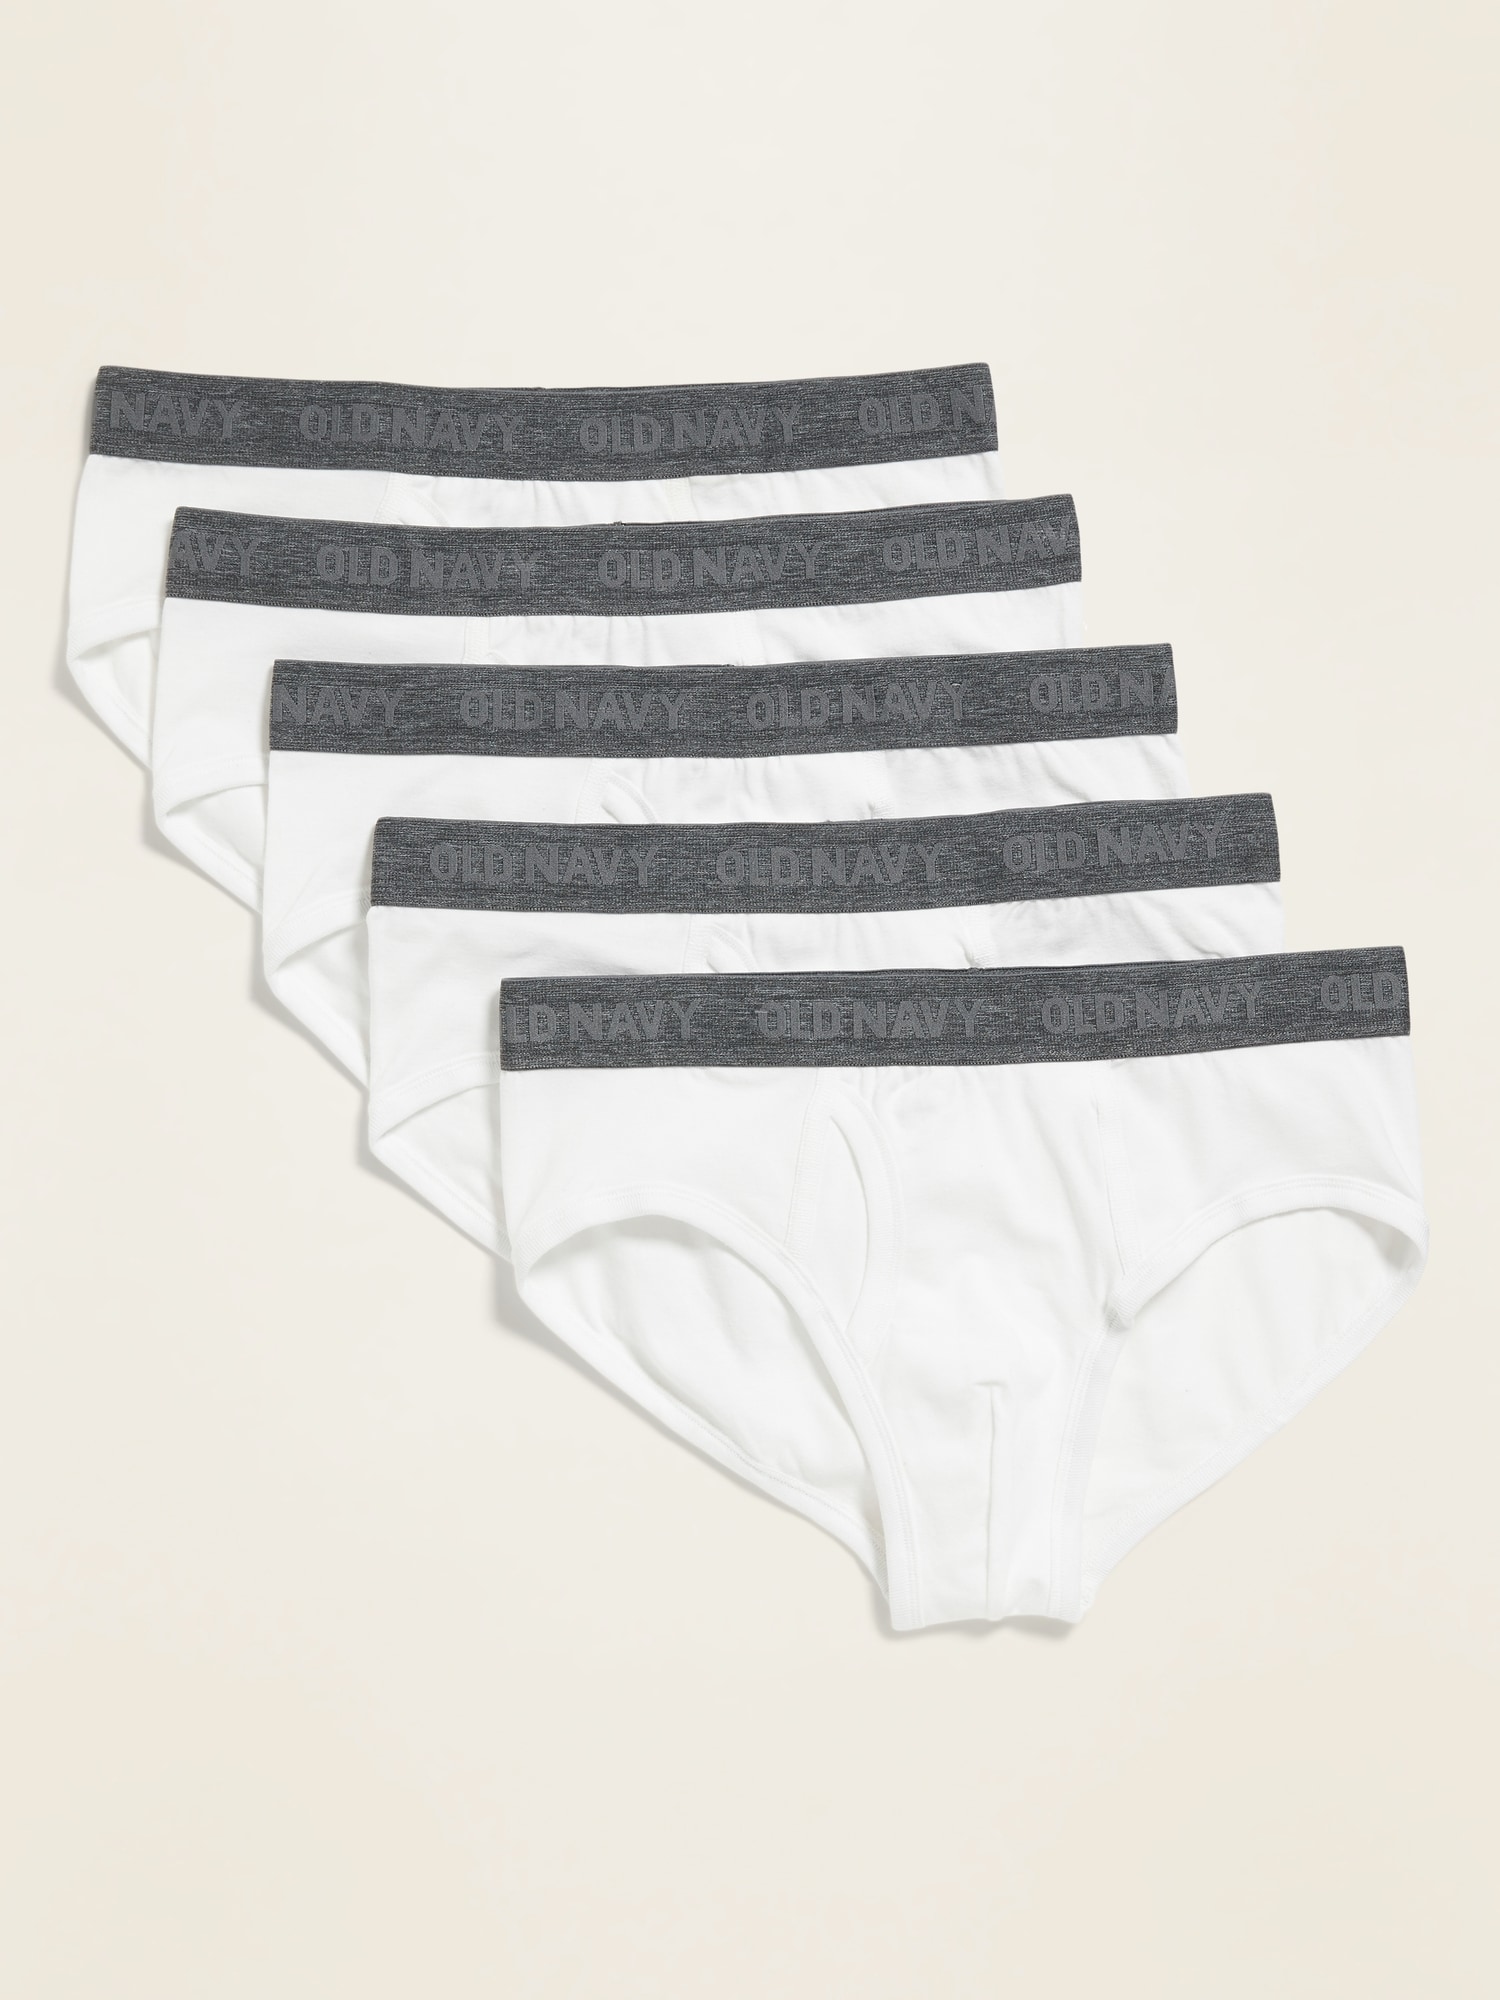 Soft-Washed Built-In Flex Underwear Briefs 5-Pack for Men | Old Navy